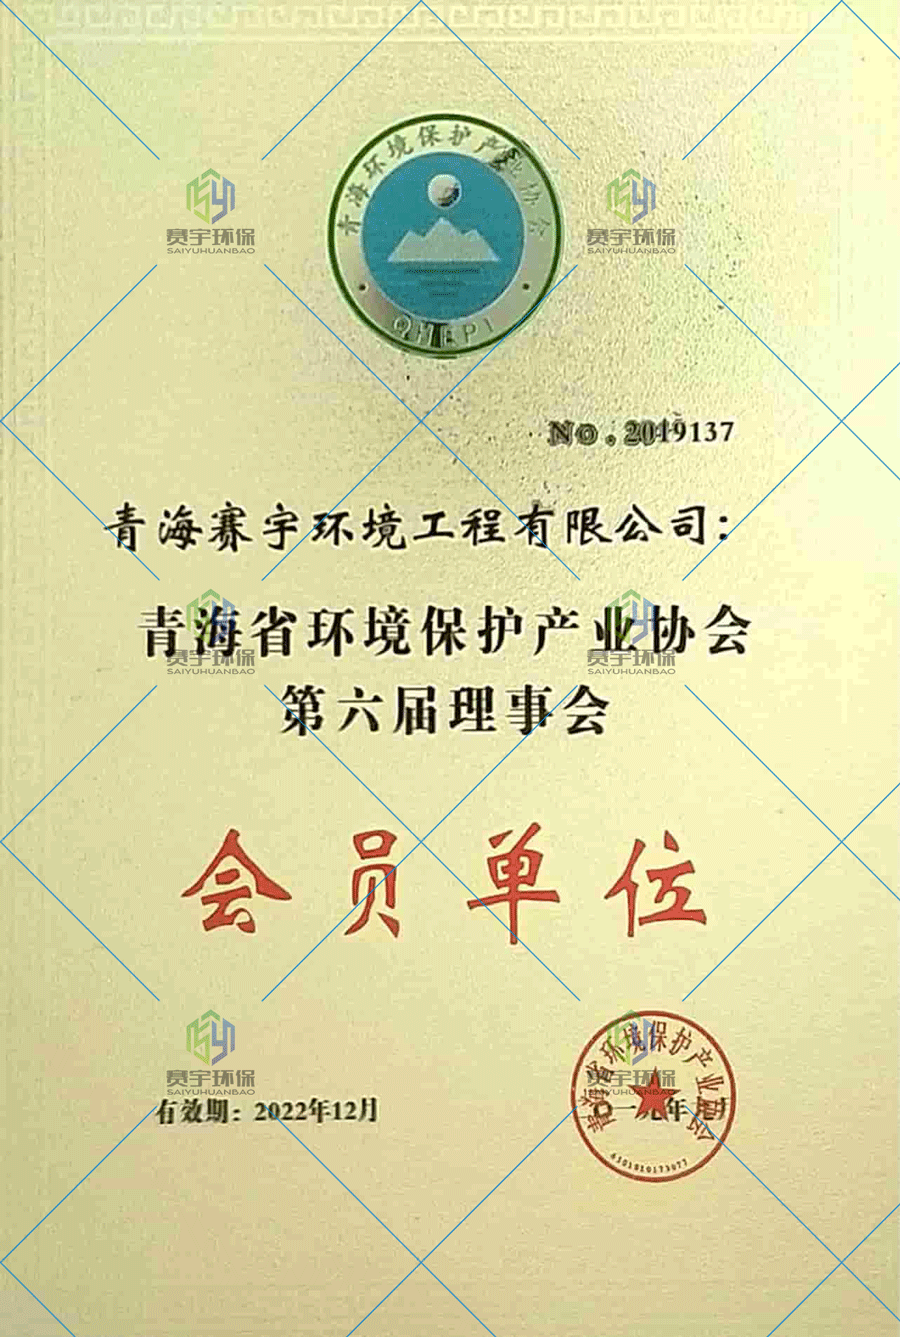 环保产业会员证书